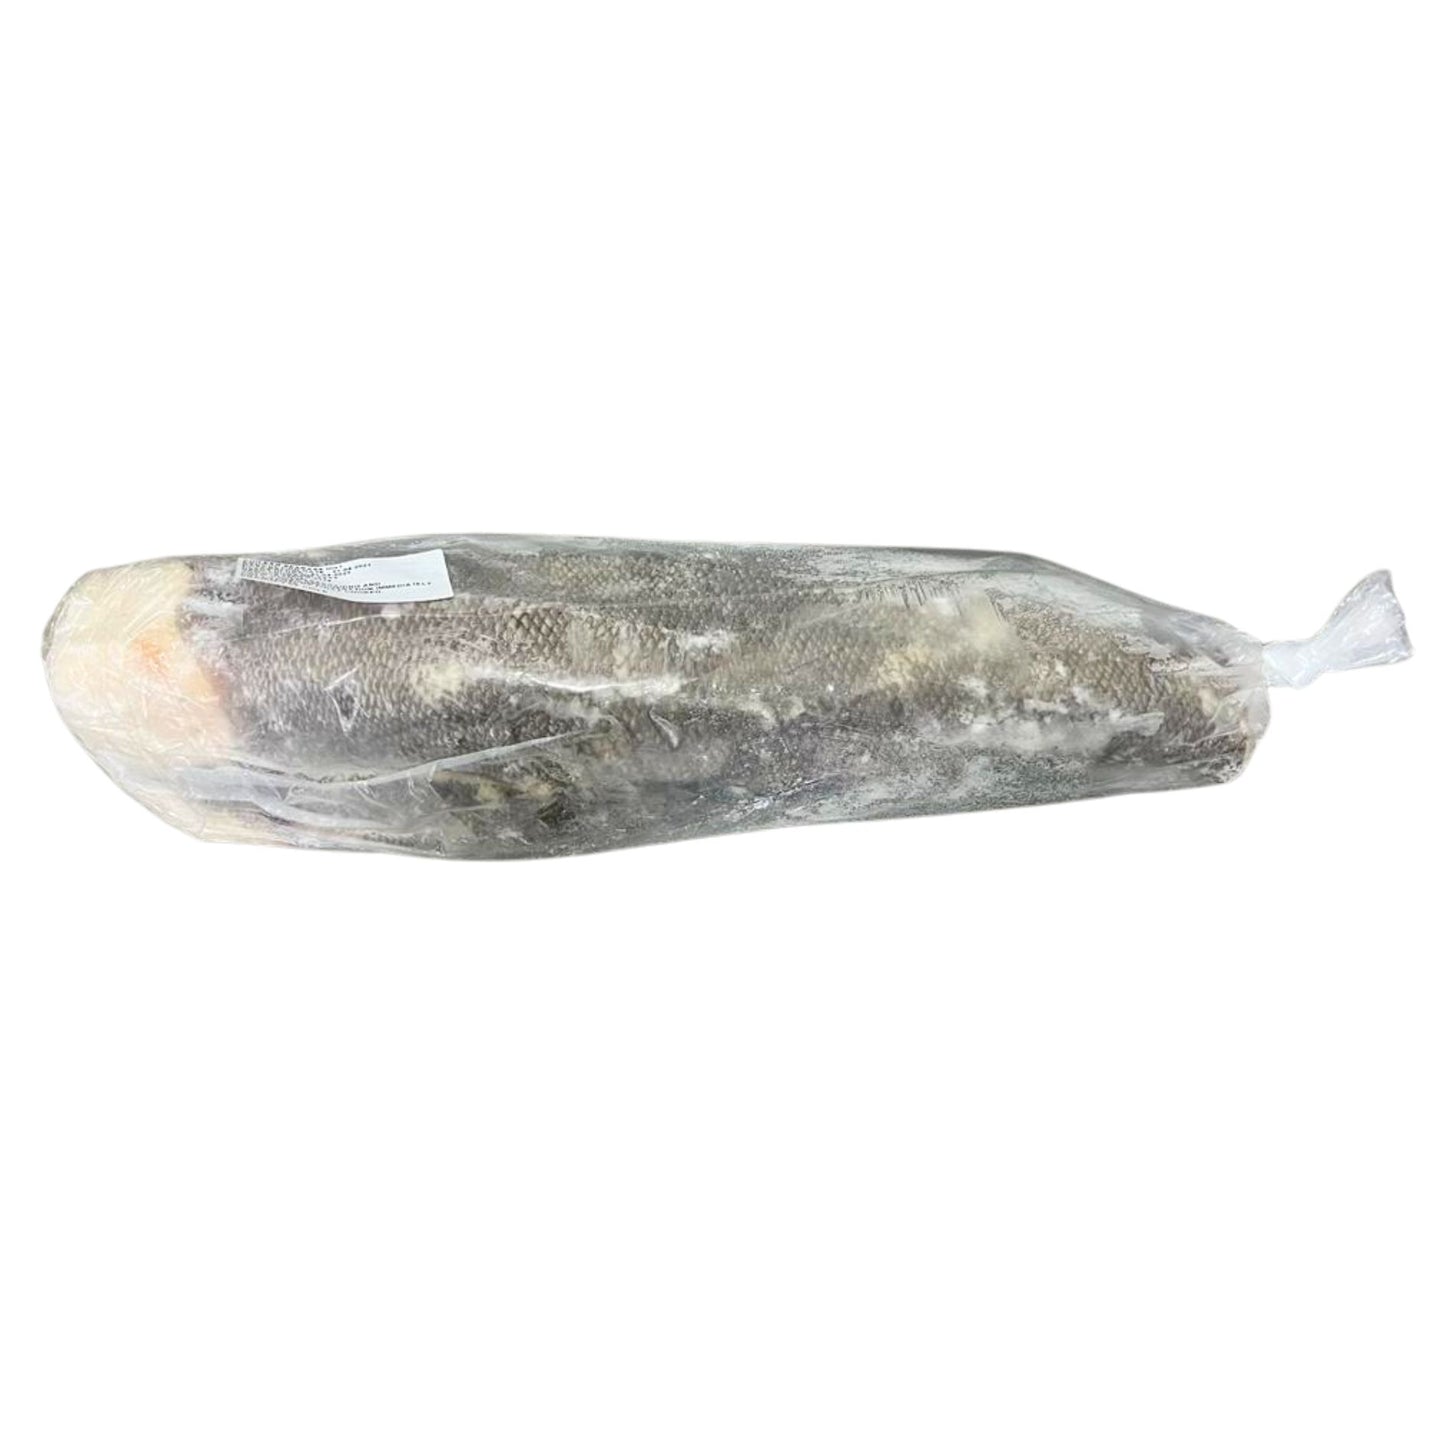 Patagonian Toothfish (Biban de Chile), Calibru: 4-7kg, Pret/Bucata 1400-2450lei - Cochiliafood